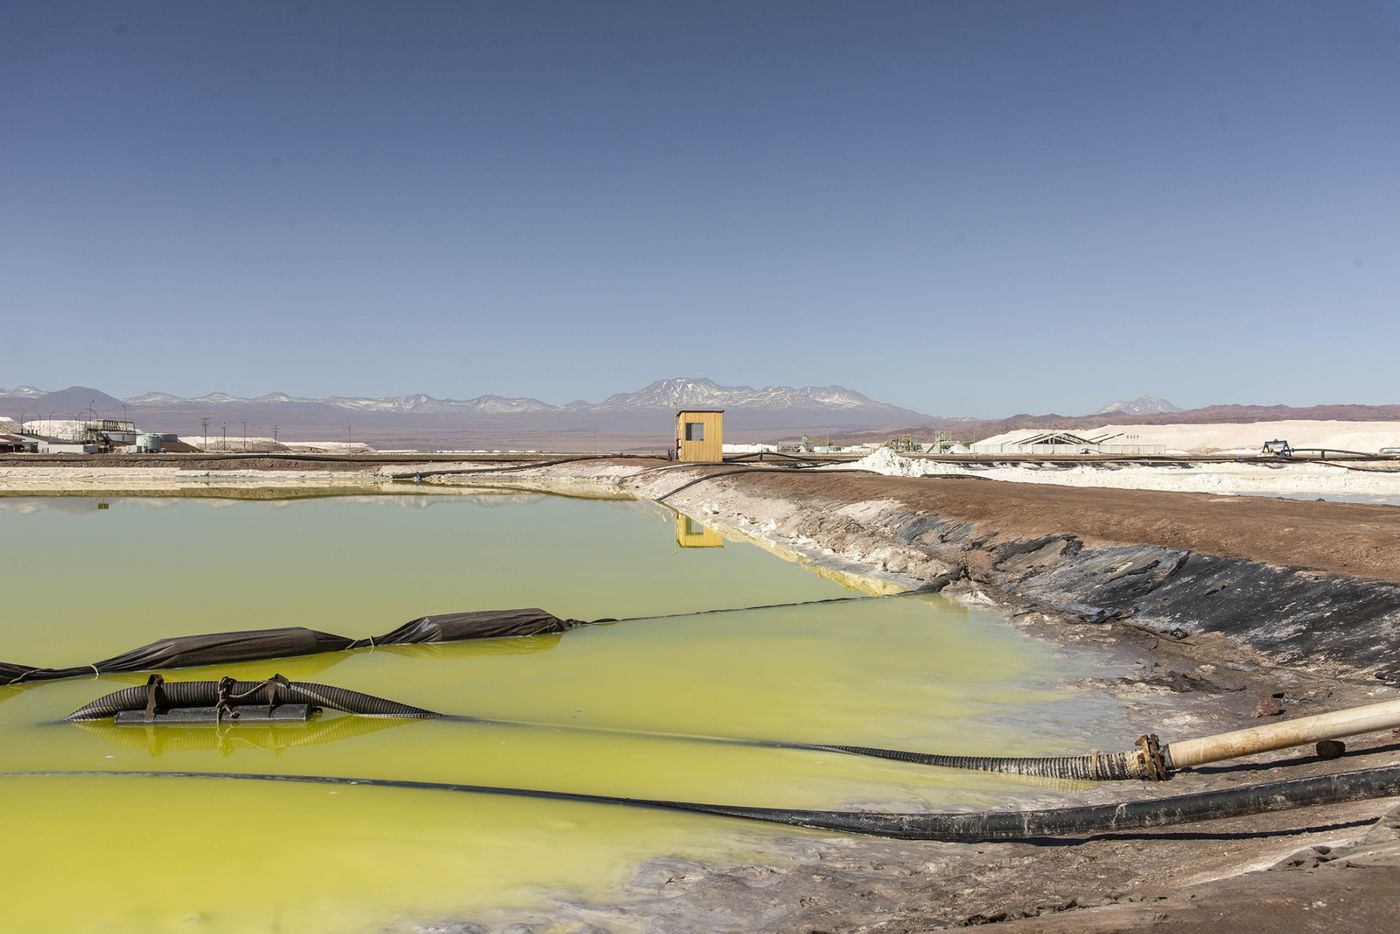 Khủng hoảng lithium nghiêm trọng: Bão giá tăng 500% chỉ sau 1 năm, nguy cơ thâm hụt vĩnh viễn khiến chính phủ đỏ mắt tìm nguồn cung trữ mỏ mới - Ảnh 4.